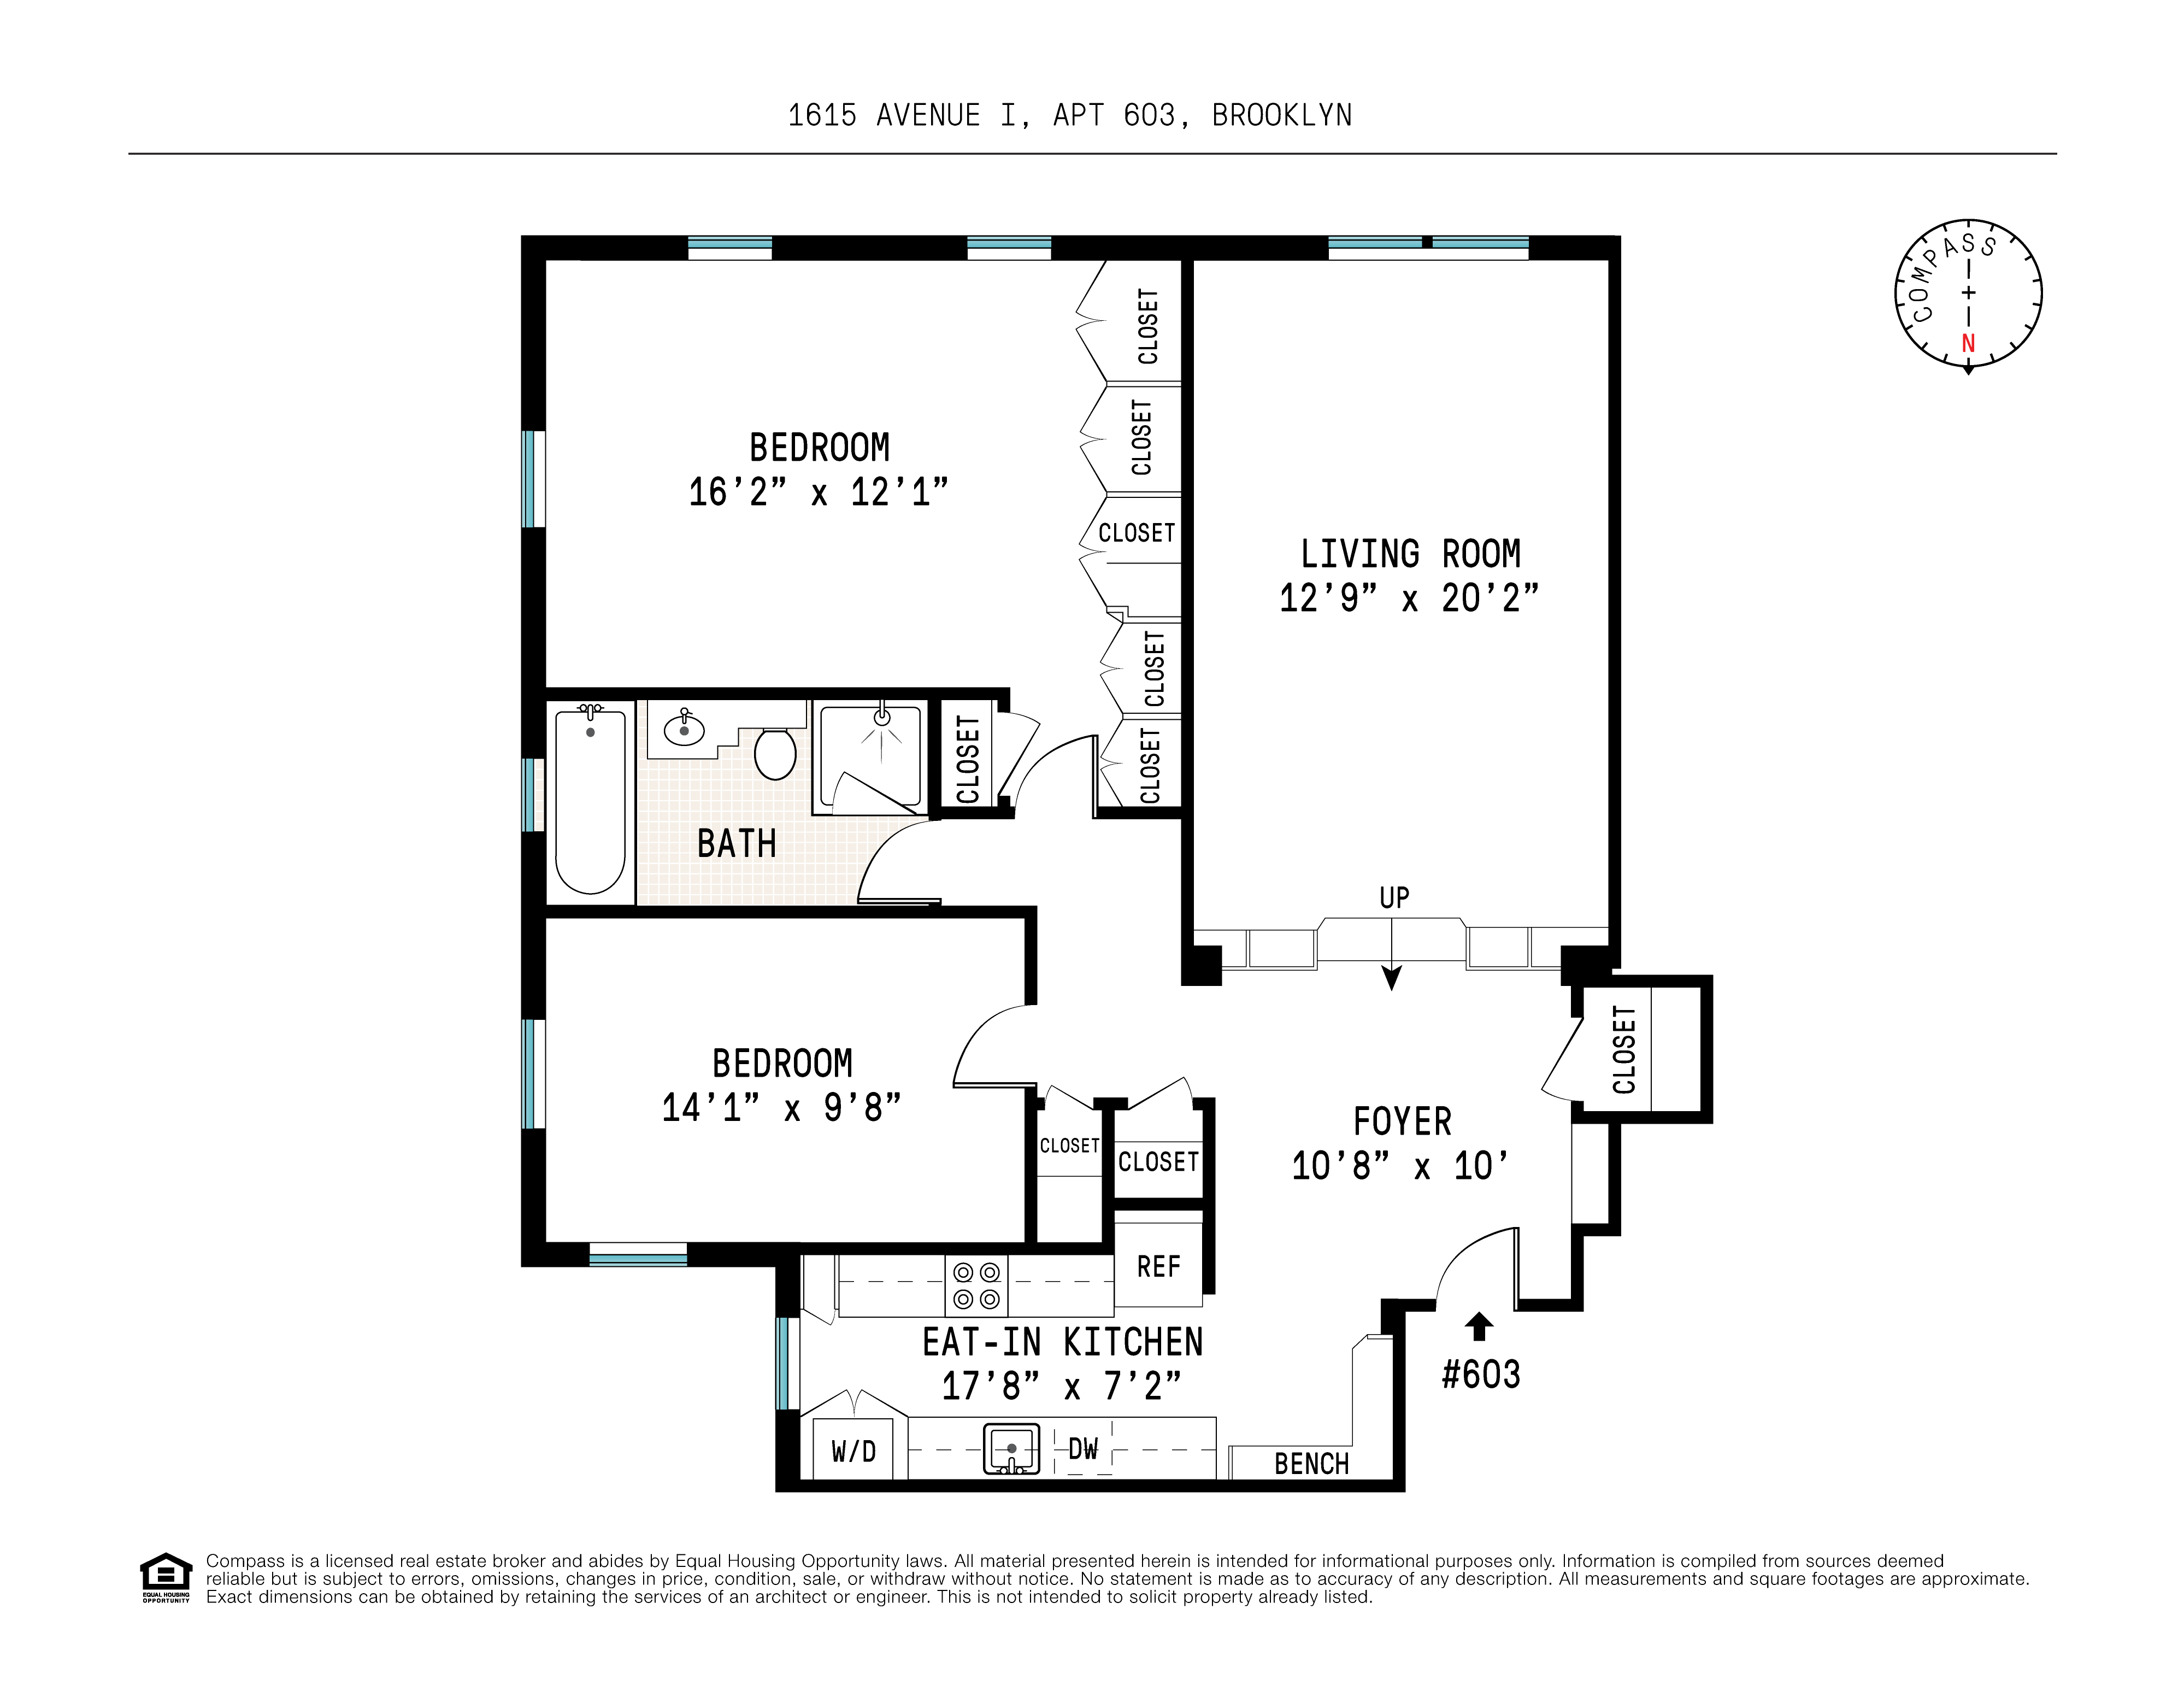 Floorplan for 1615 Ave I, 603